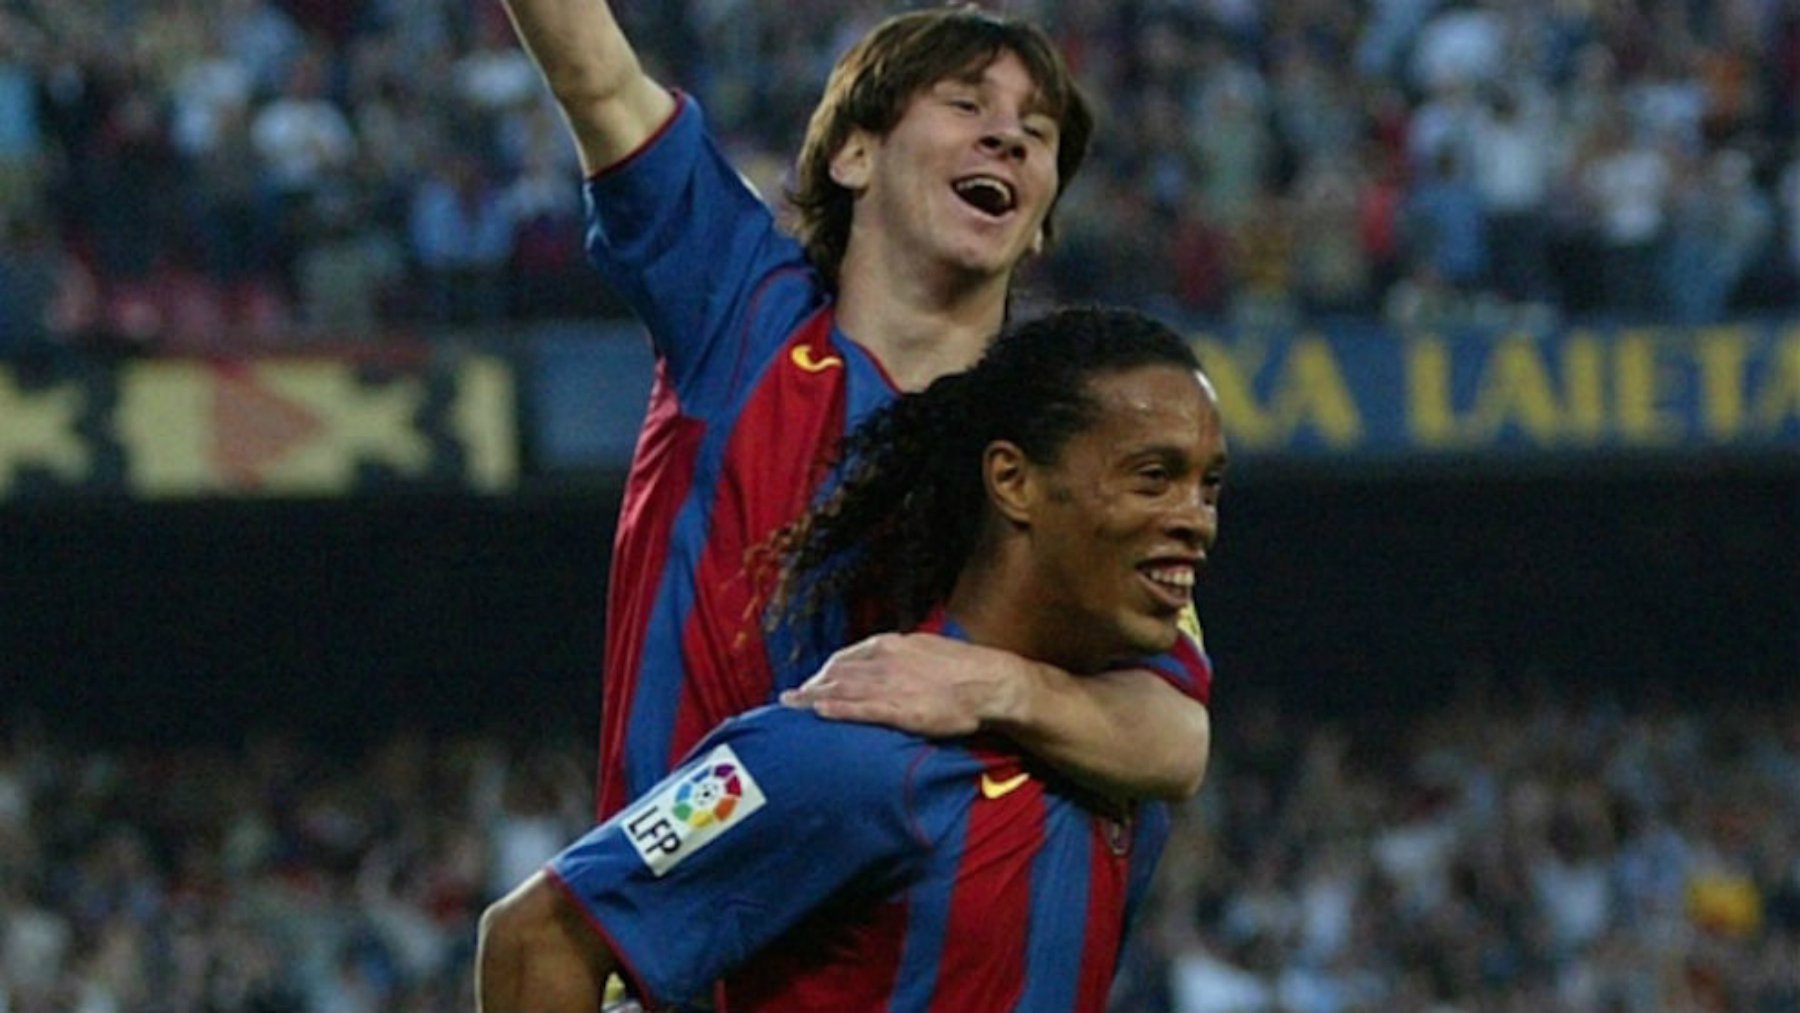 El Barça prepara un homenaje a Ronaldinho entre críticas